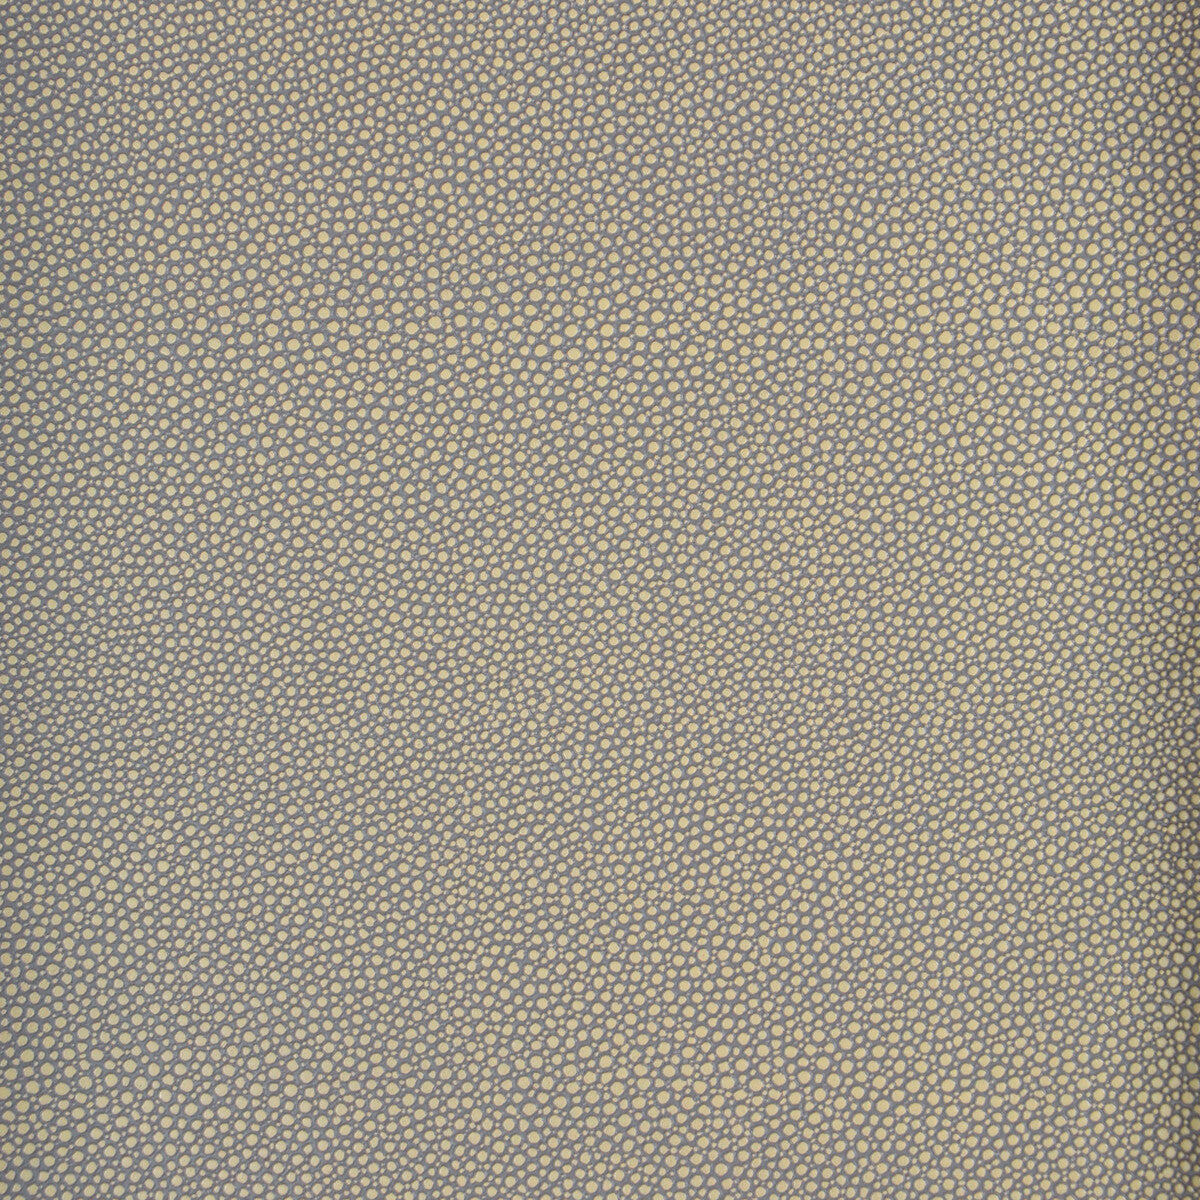 Kravet Design fabric in mindy-11 color - pattern MINDY.11.0 - by Kravet Design